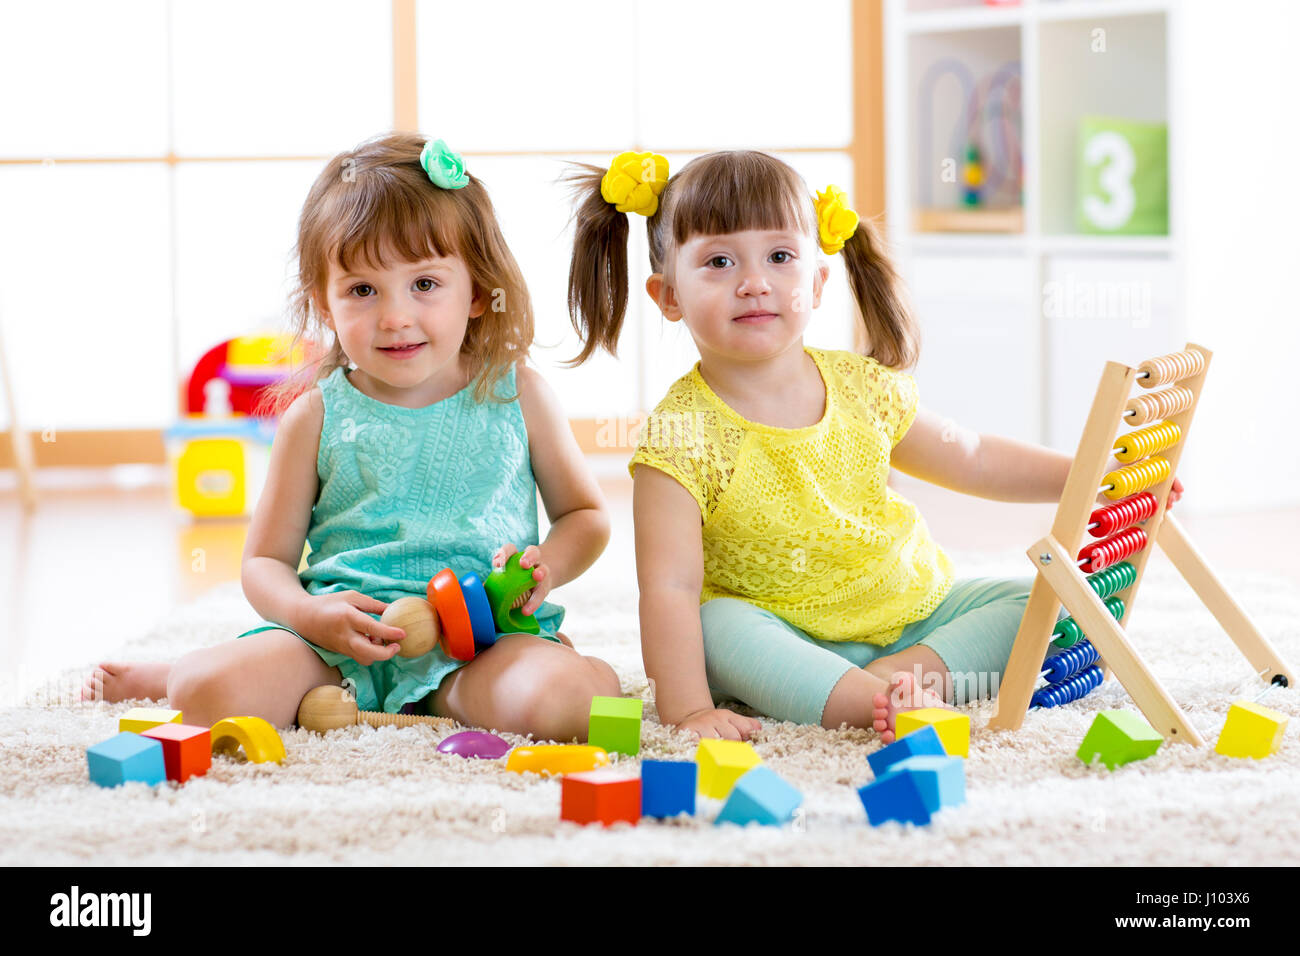 Kinder spielen zusammen. Baby und Kleinkind Kinder spielen mit Blöcken. Pädagogische Spielwaren für Vorschule und Kindergarten Kind. Kleine Mädchen bauen Block Spielzeug Stockfoto